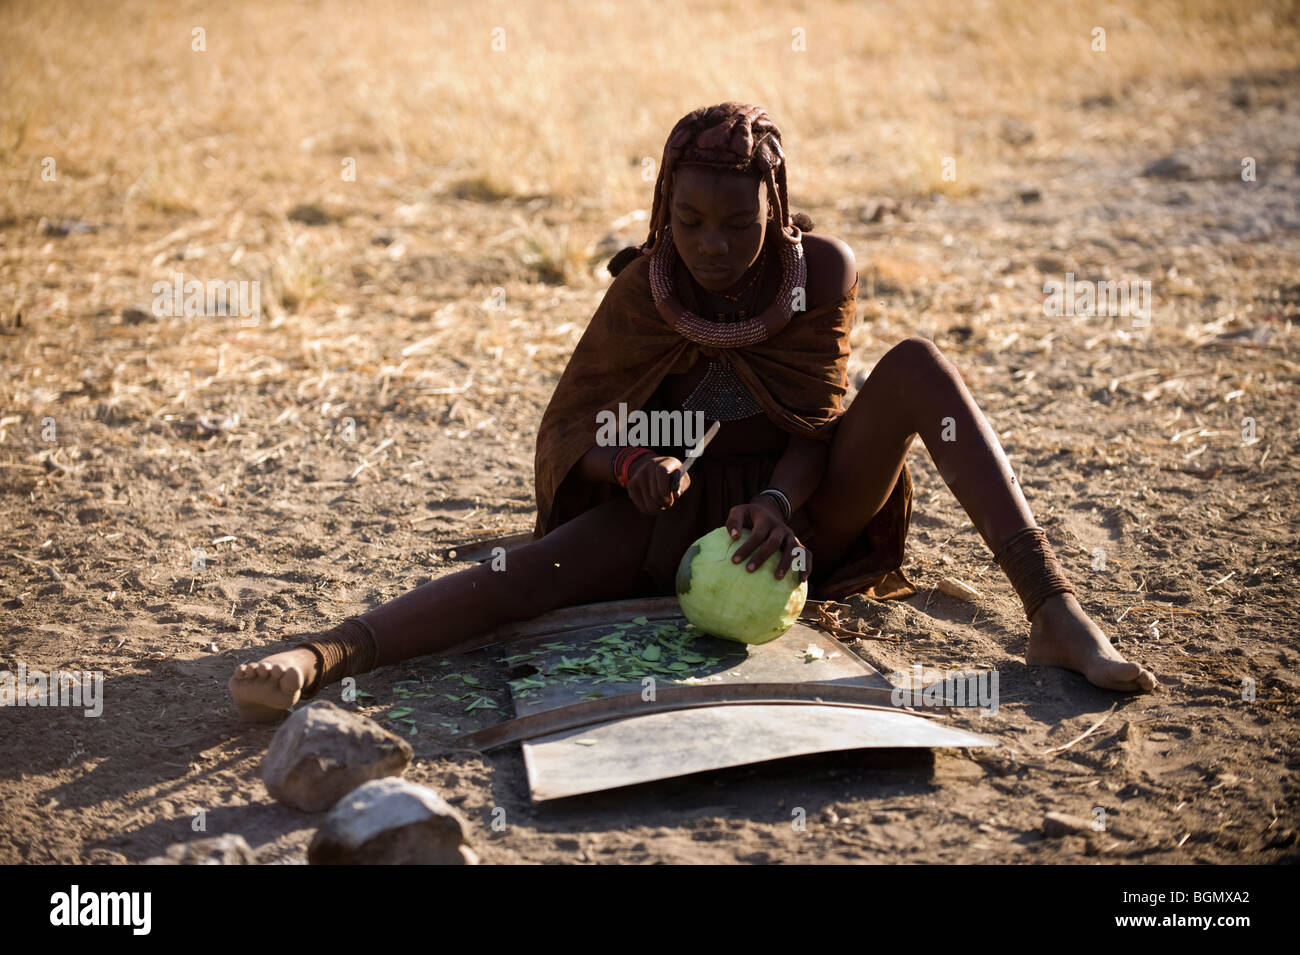 La préparation des aliments femme Himba, Namibie Banque D'Images